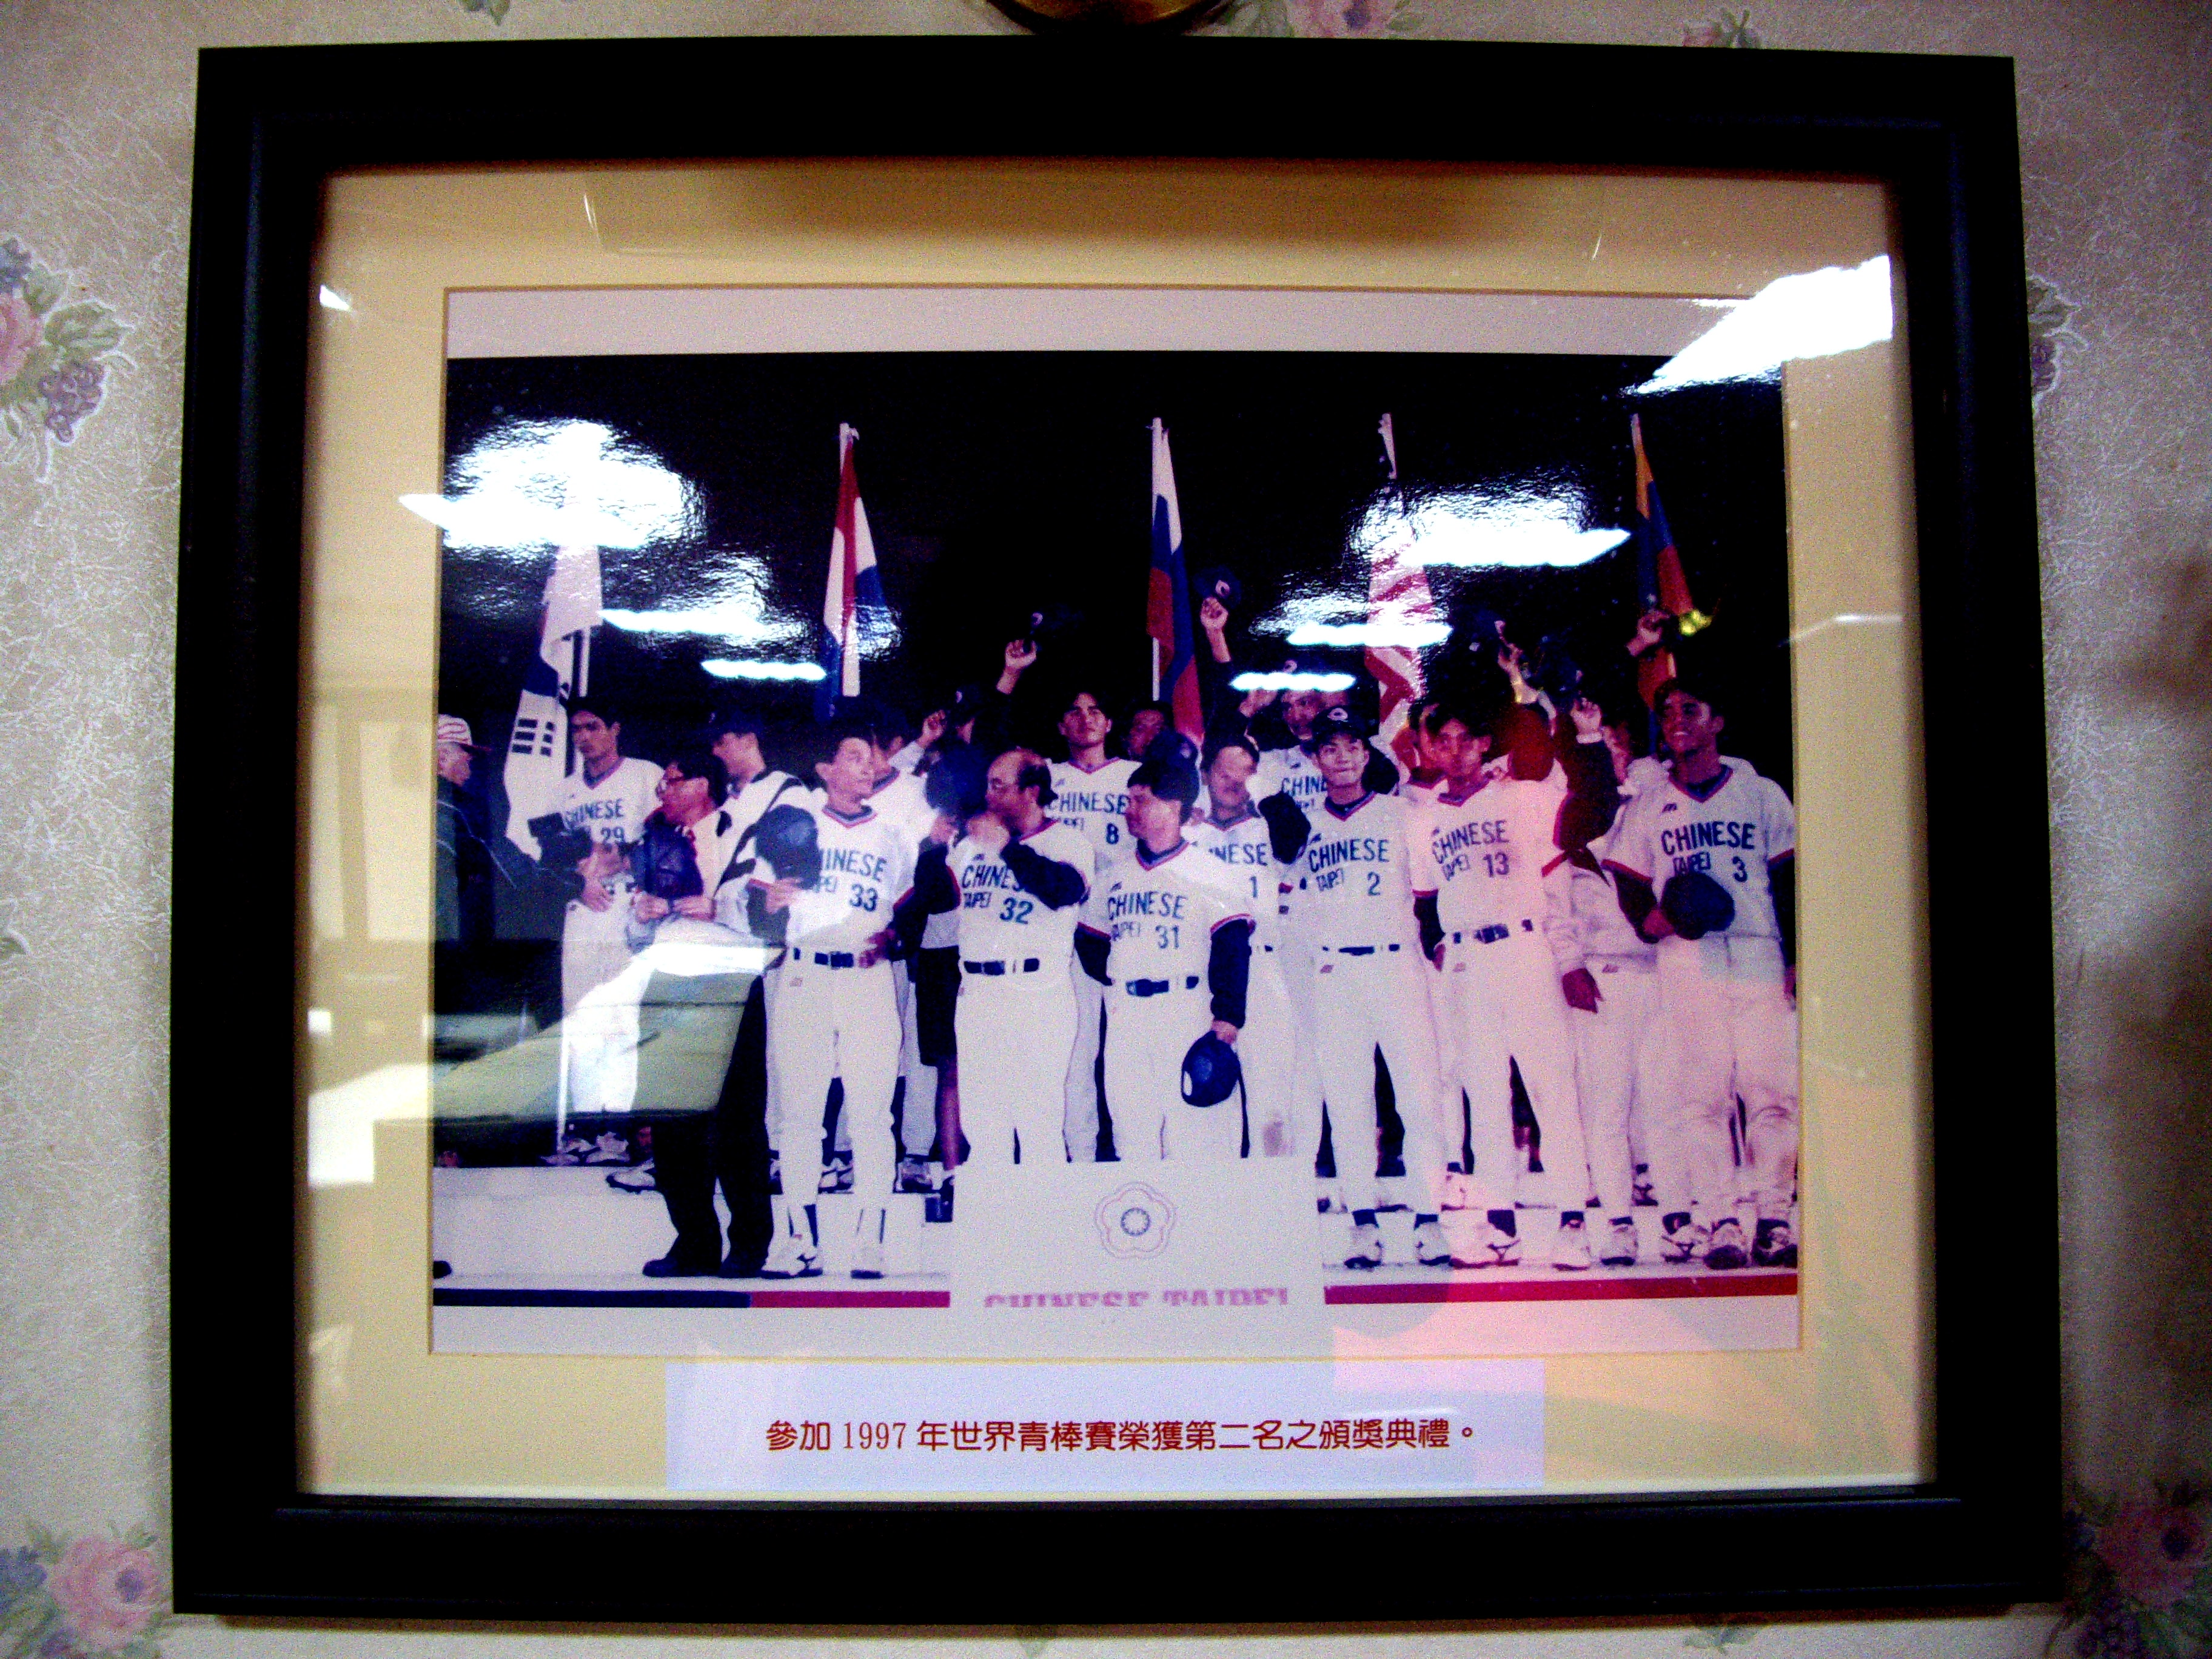 1997年世界青棒賽獲第二名頒獎典禮(裱框照)